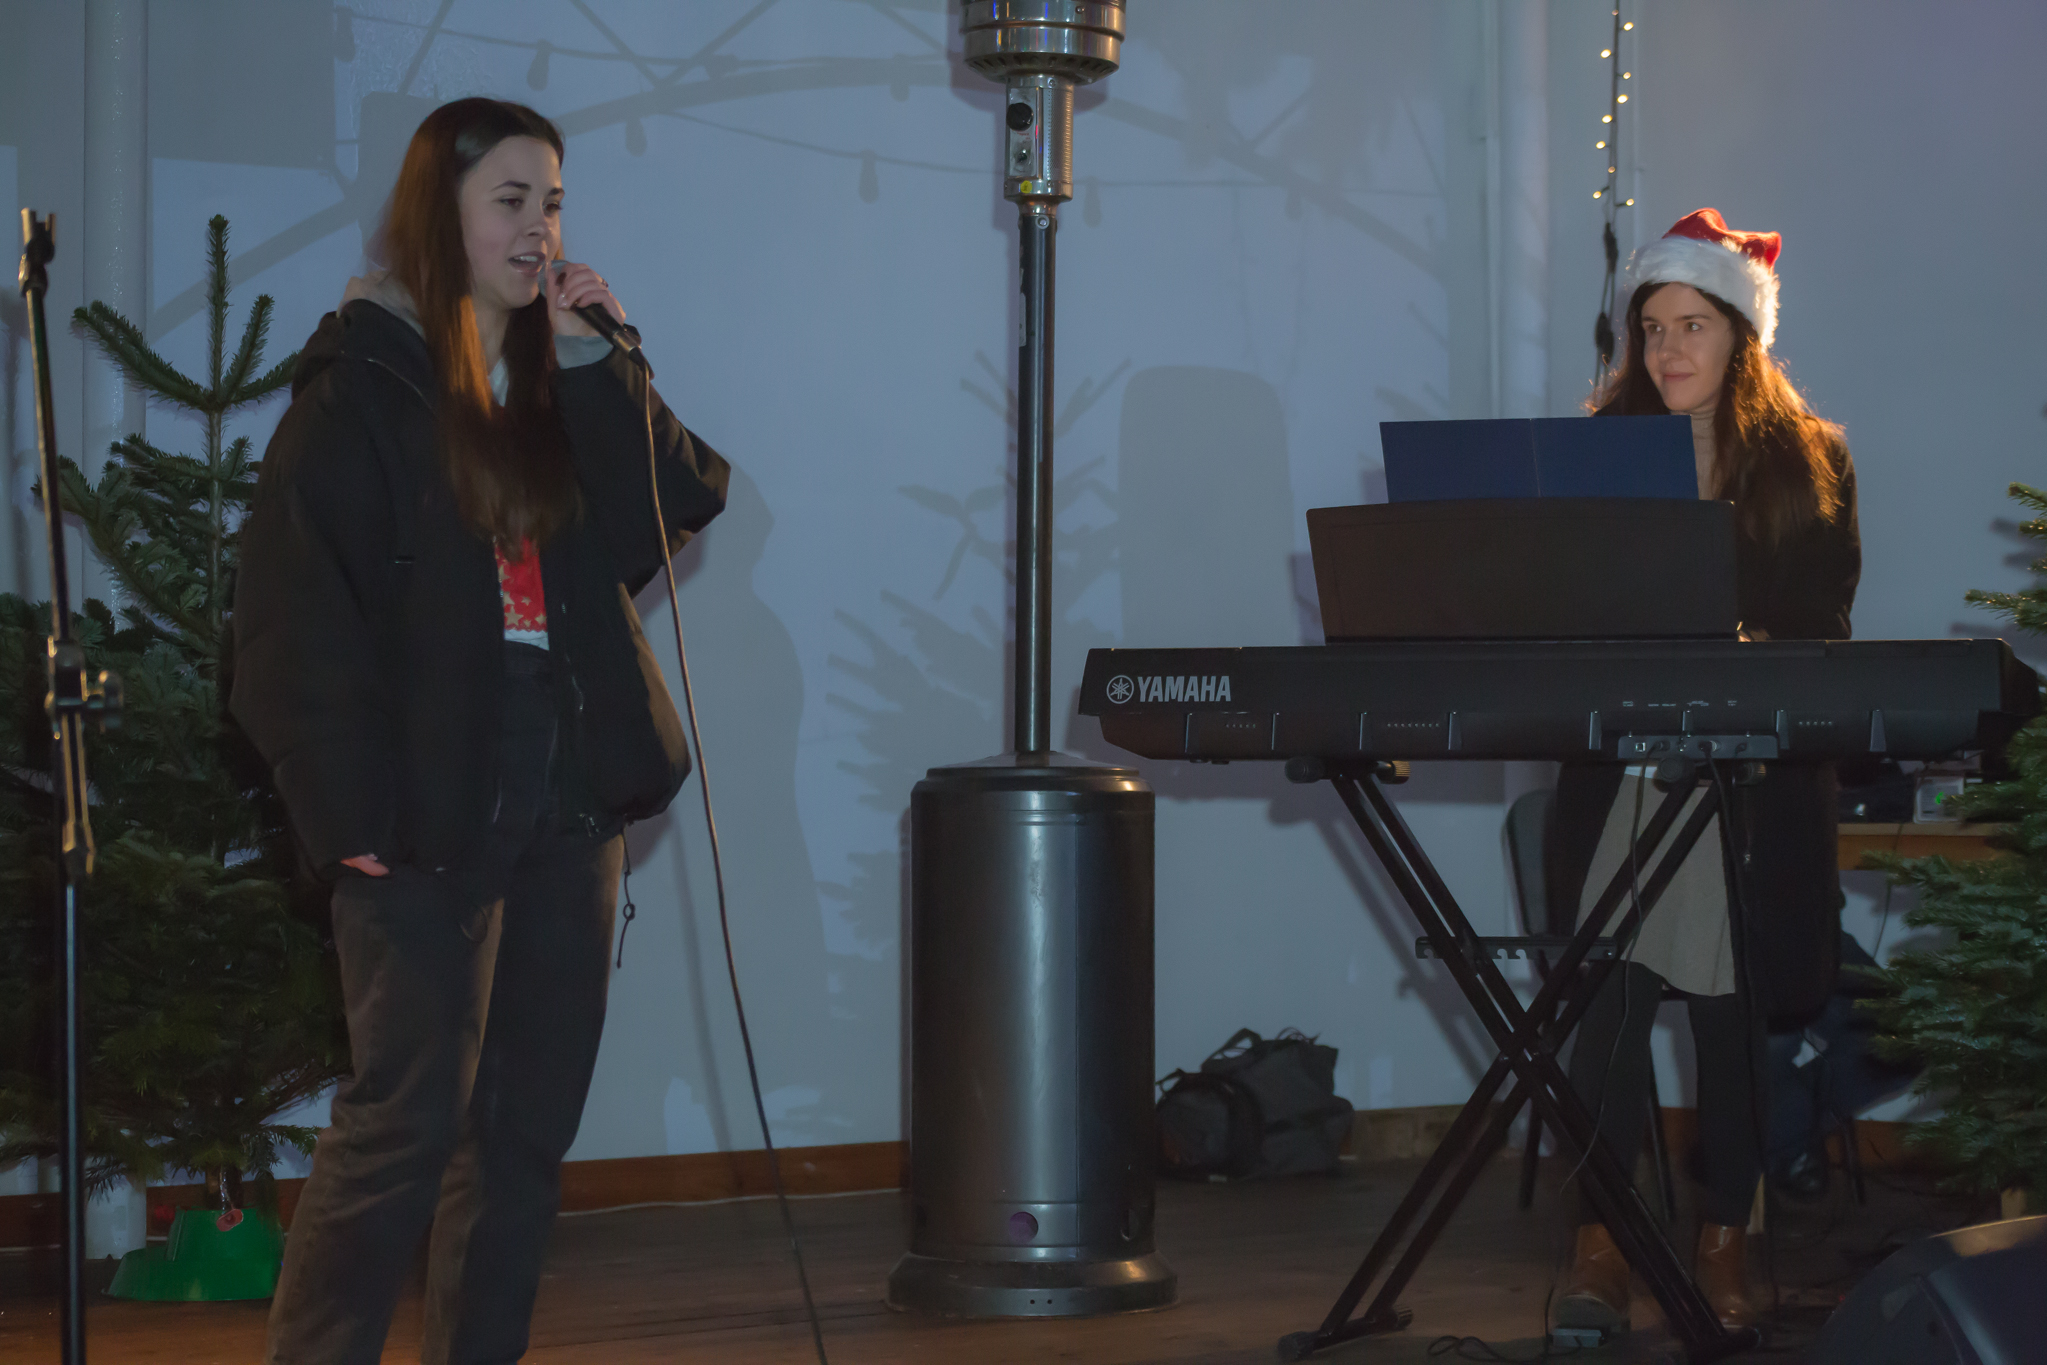 Na scenie młoda dziewczyna śpiewa do mikrofonu. Druga młoda kobieta w czapce świątecznej gra na elektrycznym pianinie. Obie panie są rozpromienione. W tle dekoracja świąteczna, żywe choinki, światełka choinkowe oraz latarnia ogrzewająca scenę.